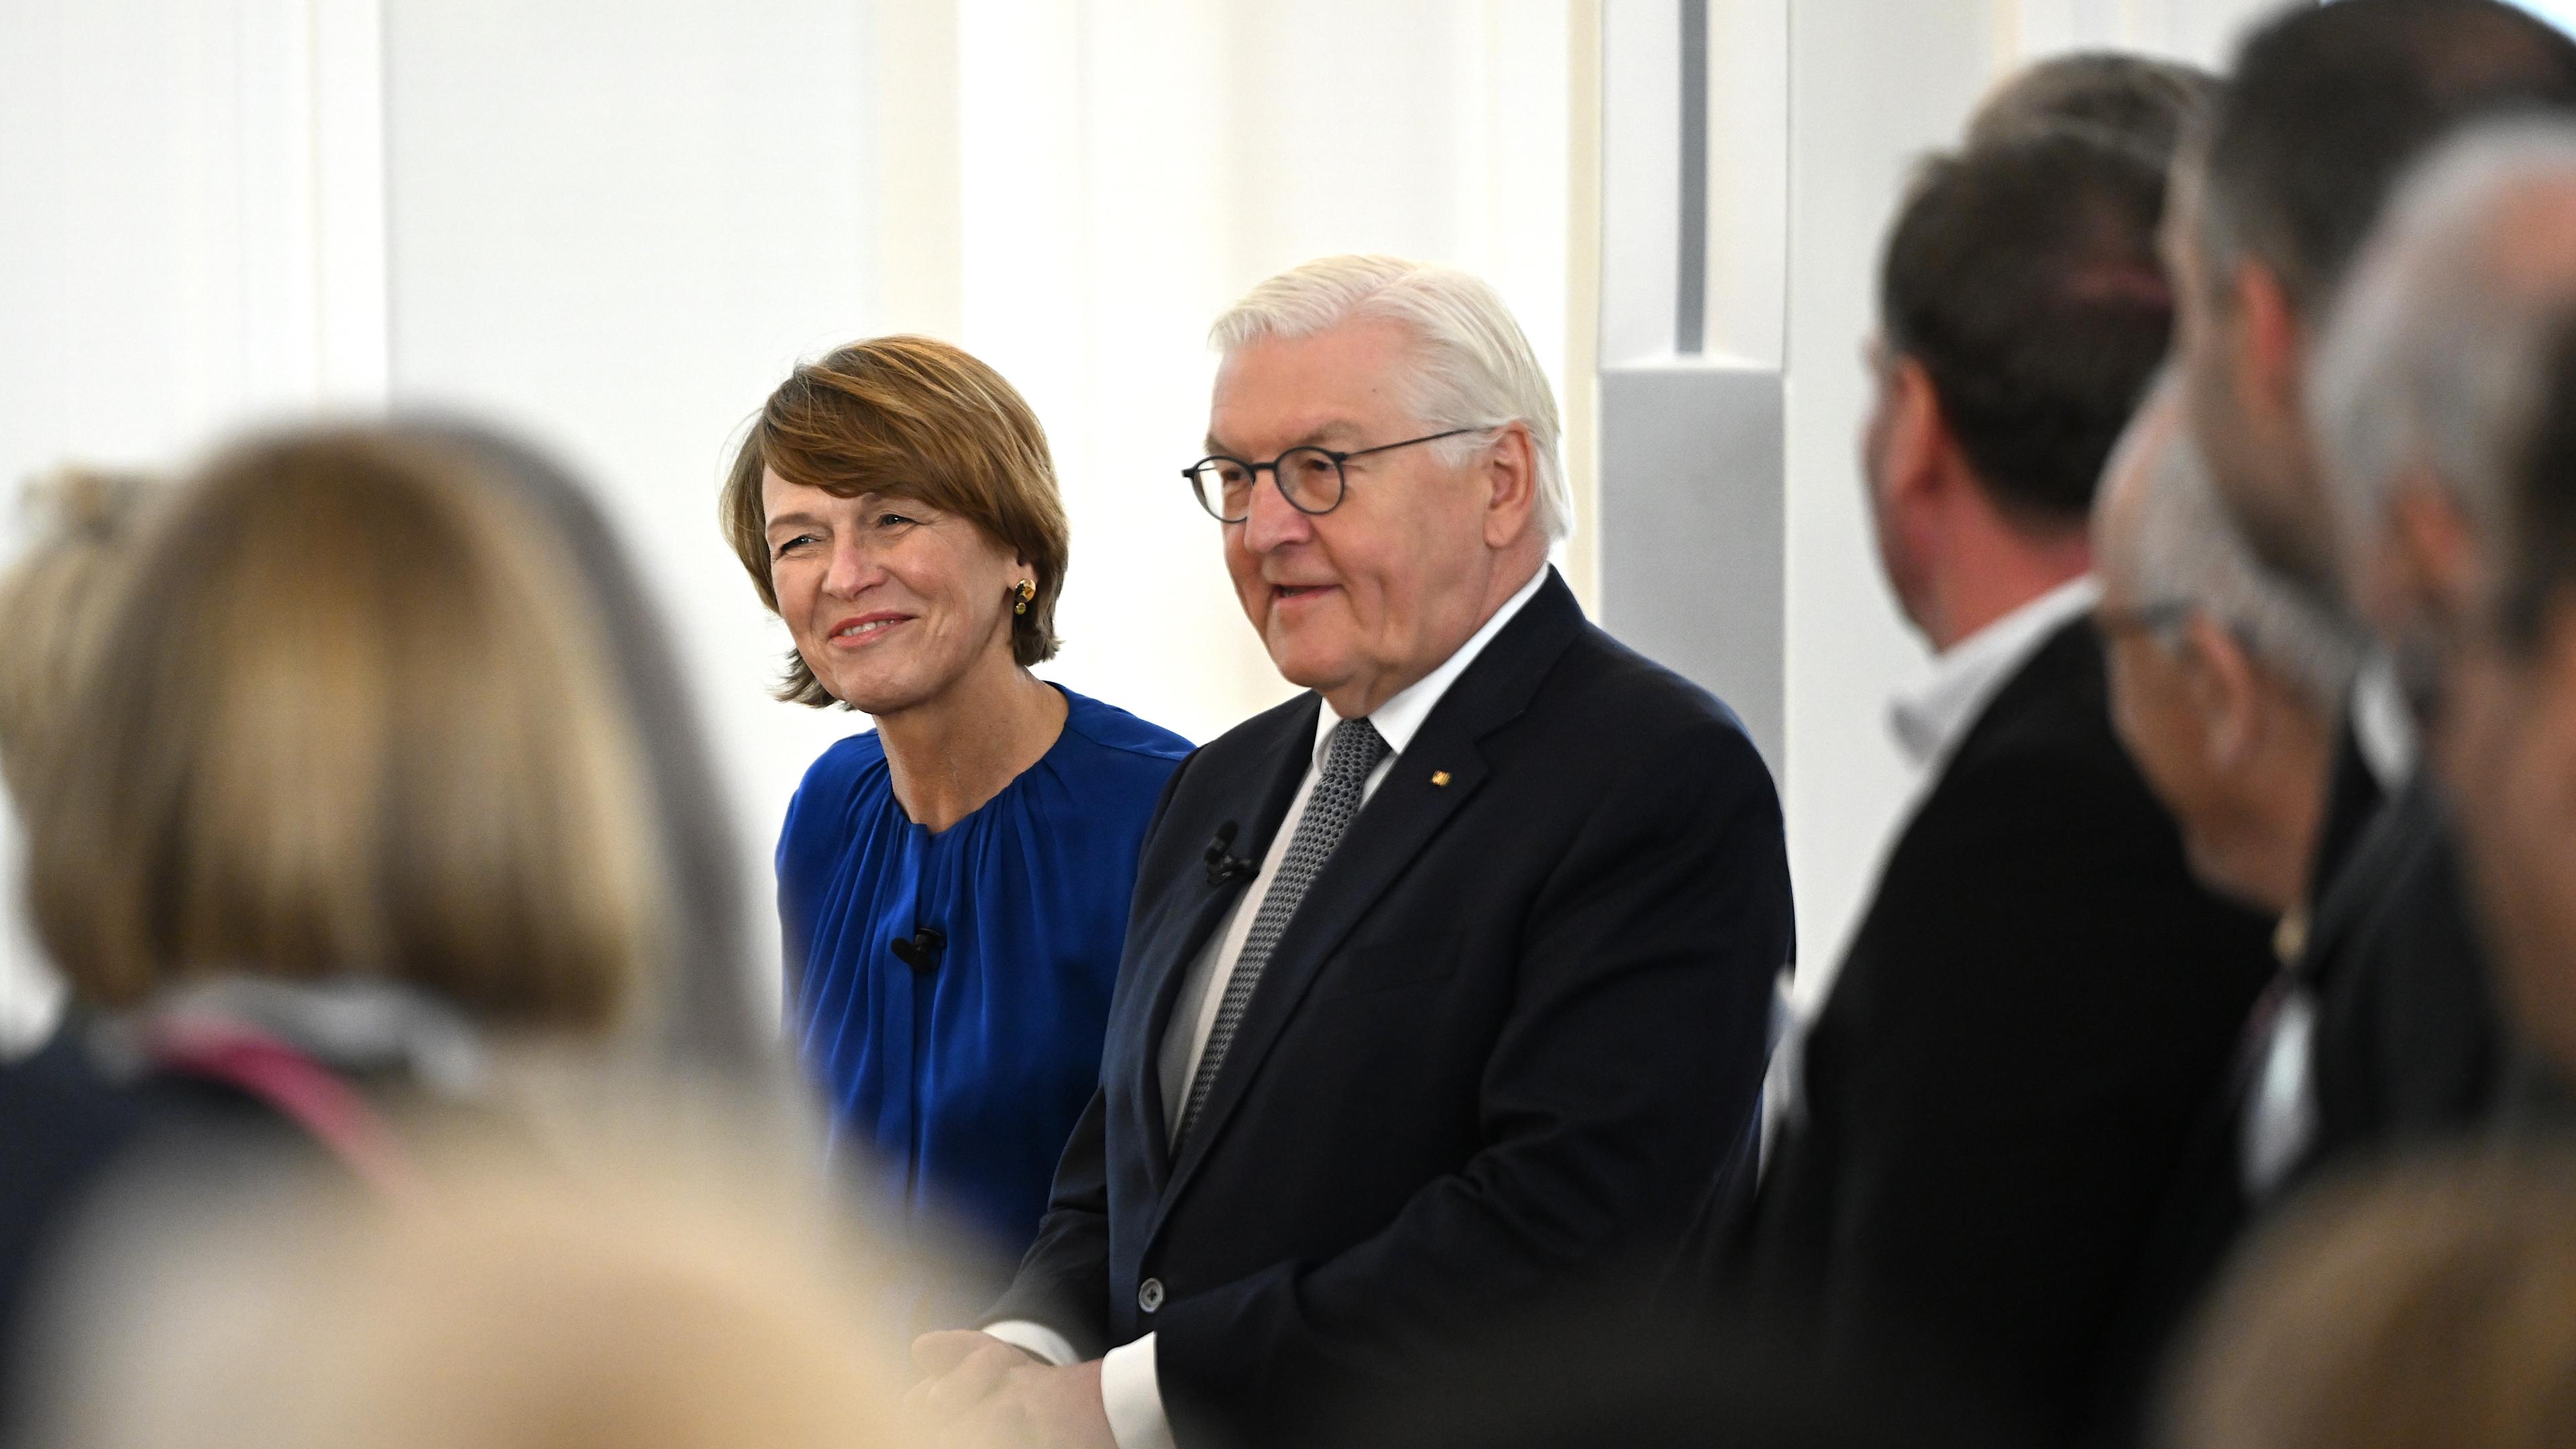 Bundespräsident Frank-Walter Steinmeier will sich heute in Berlin mit rund 80 ehrenamtlichen Bürgermeistern und Bürgermeisterinnen austauschen.